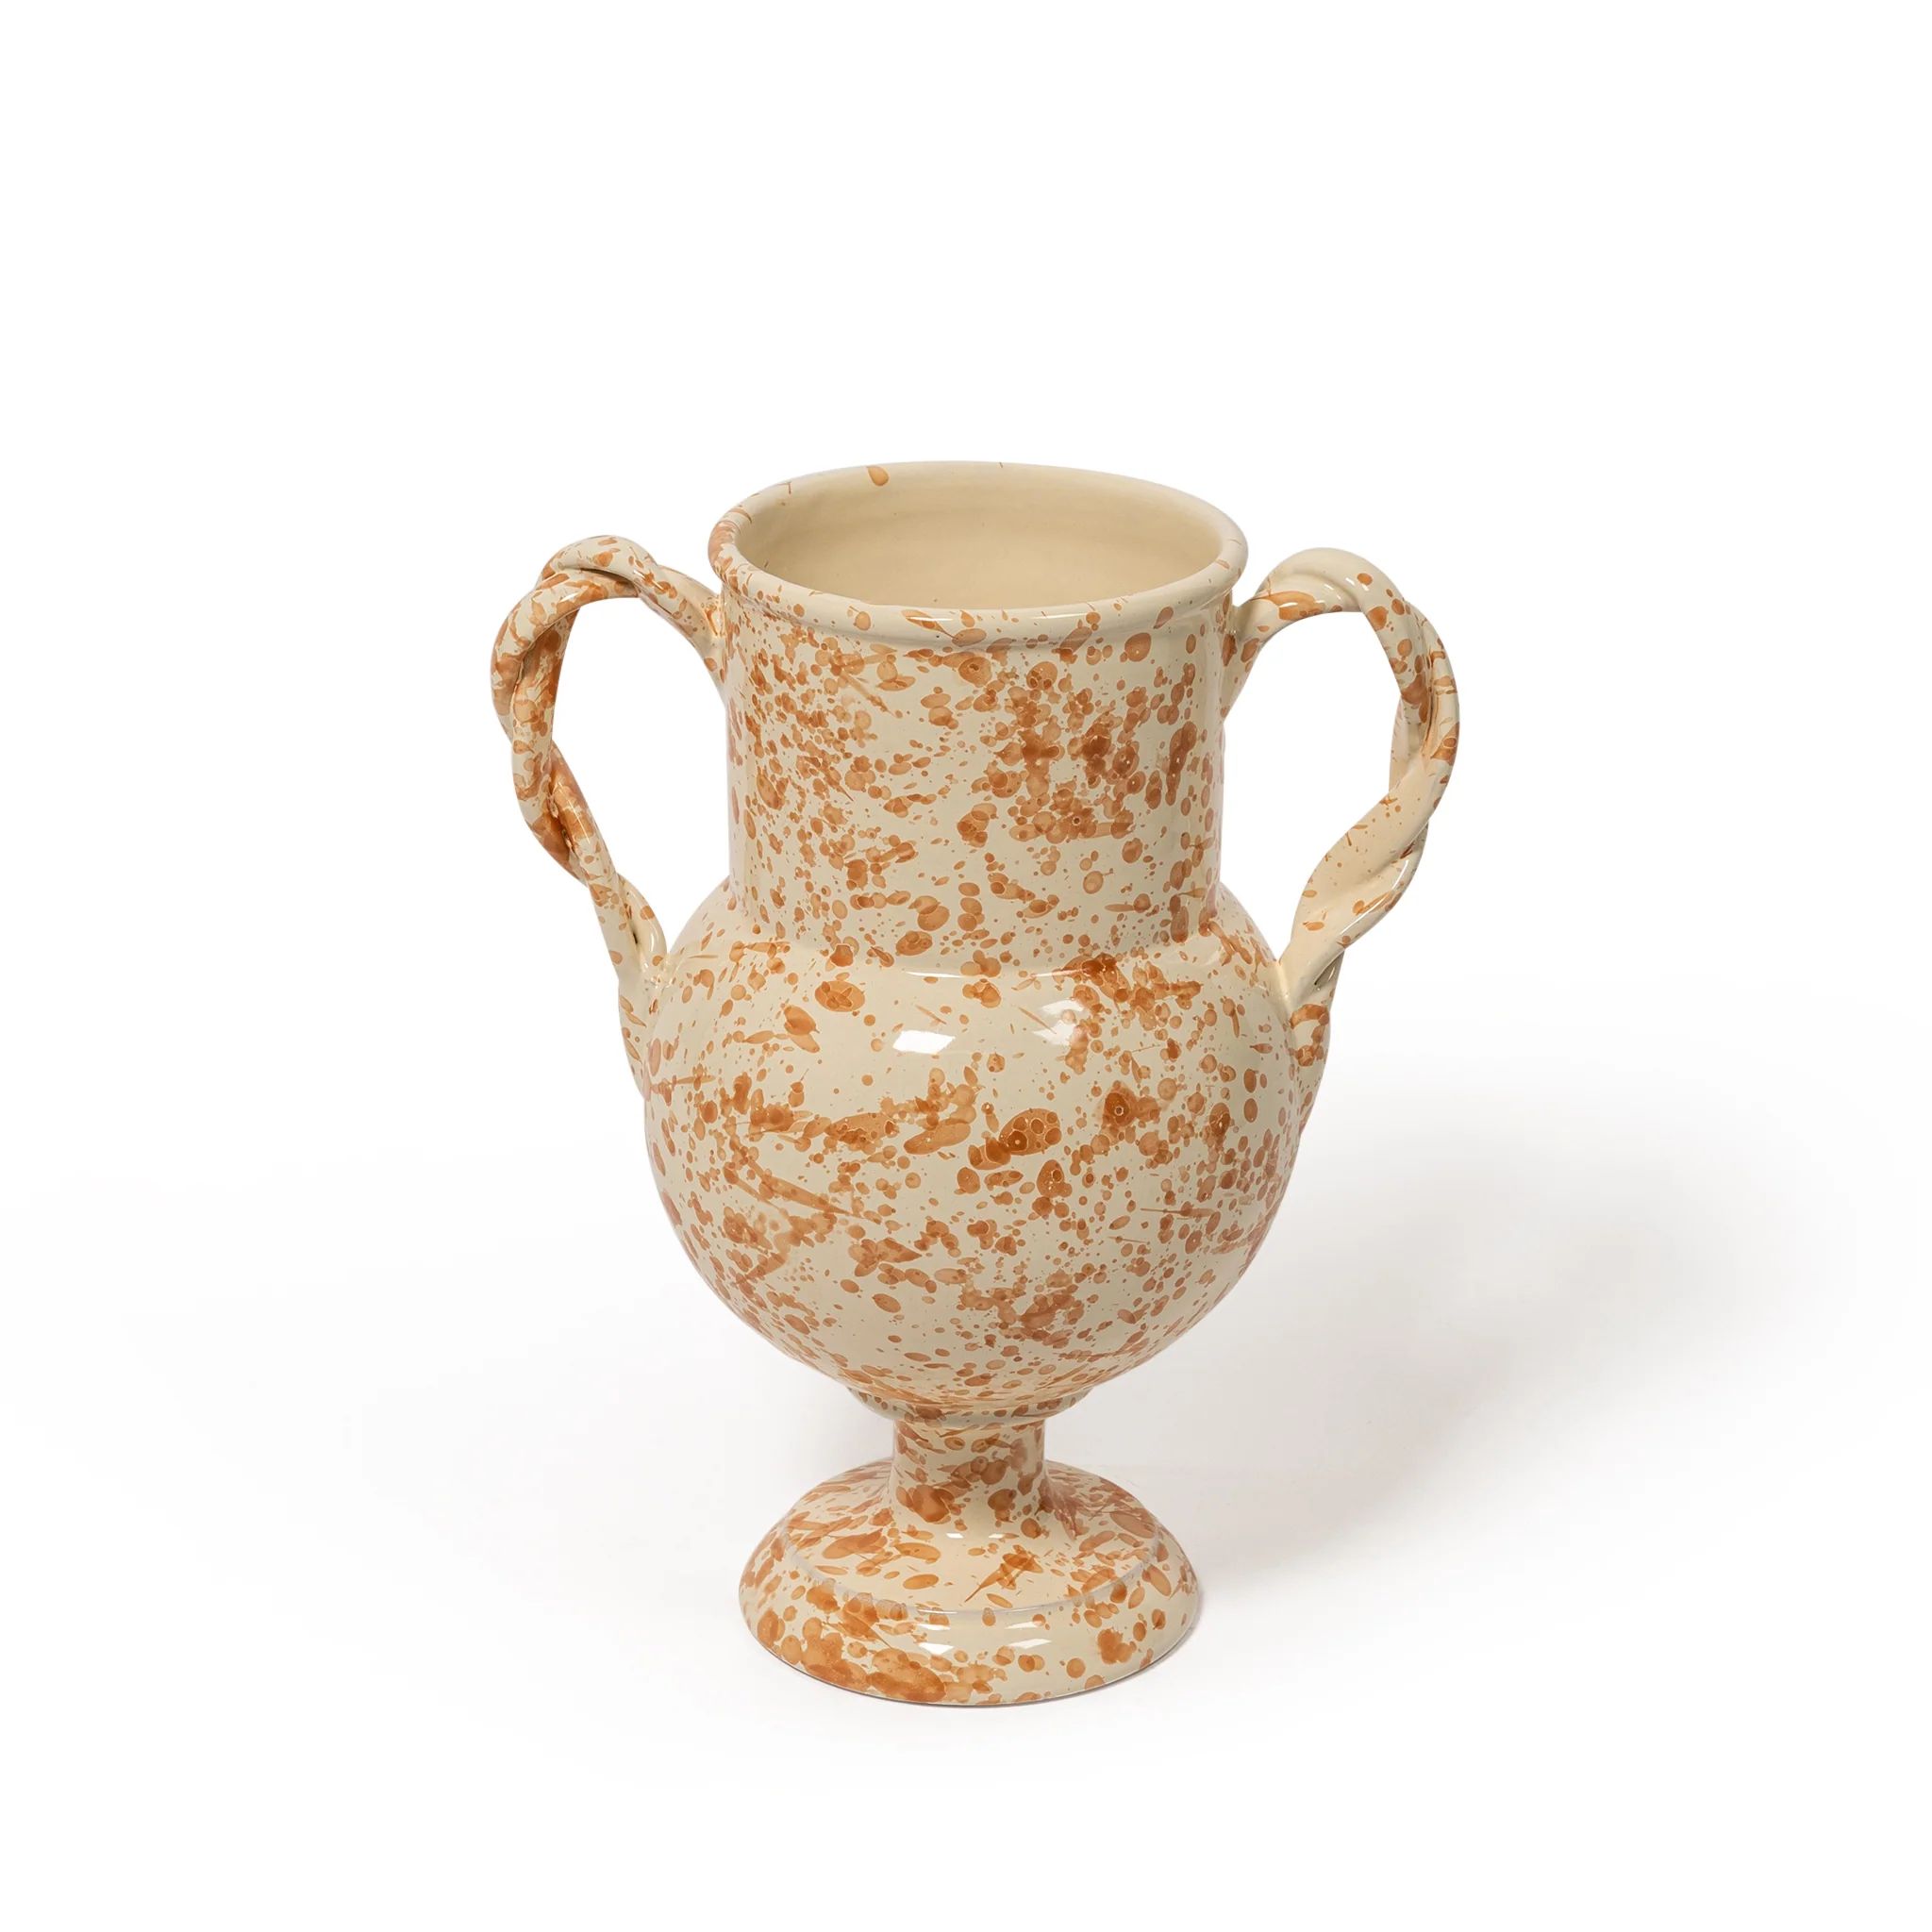 Splatter Verona vase | Sharland England